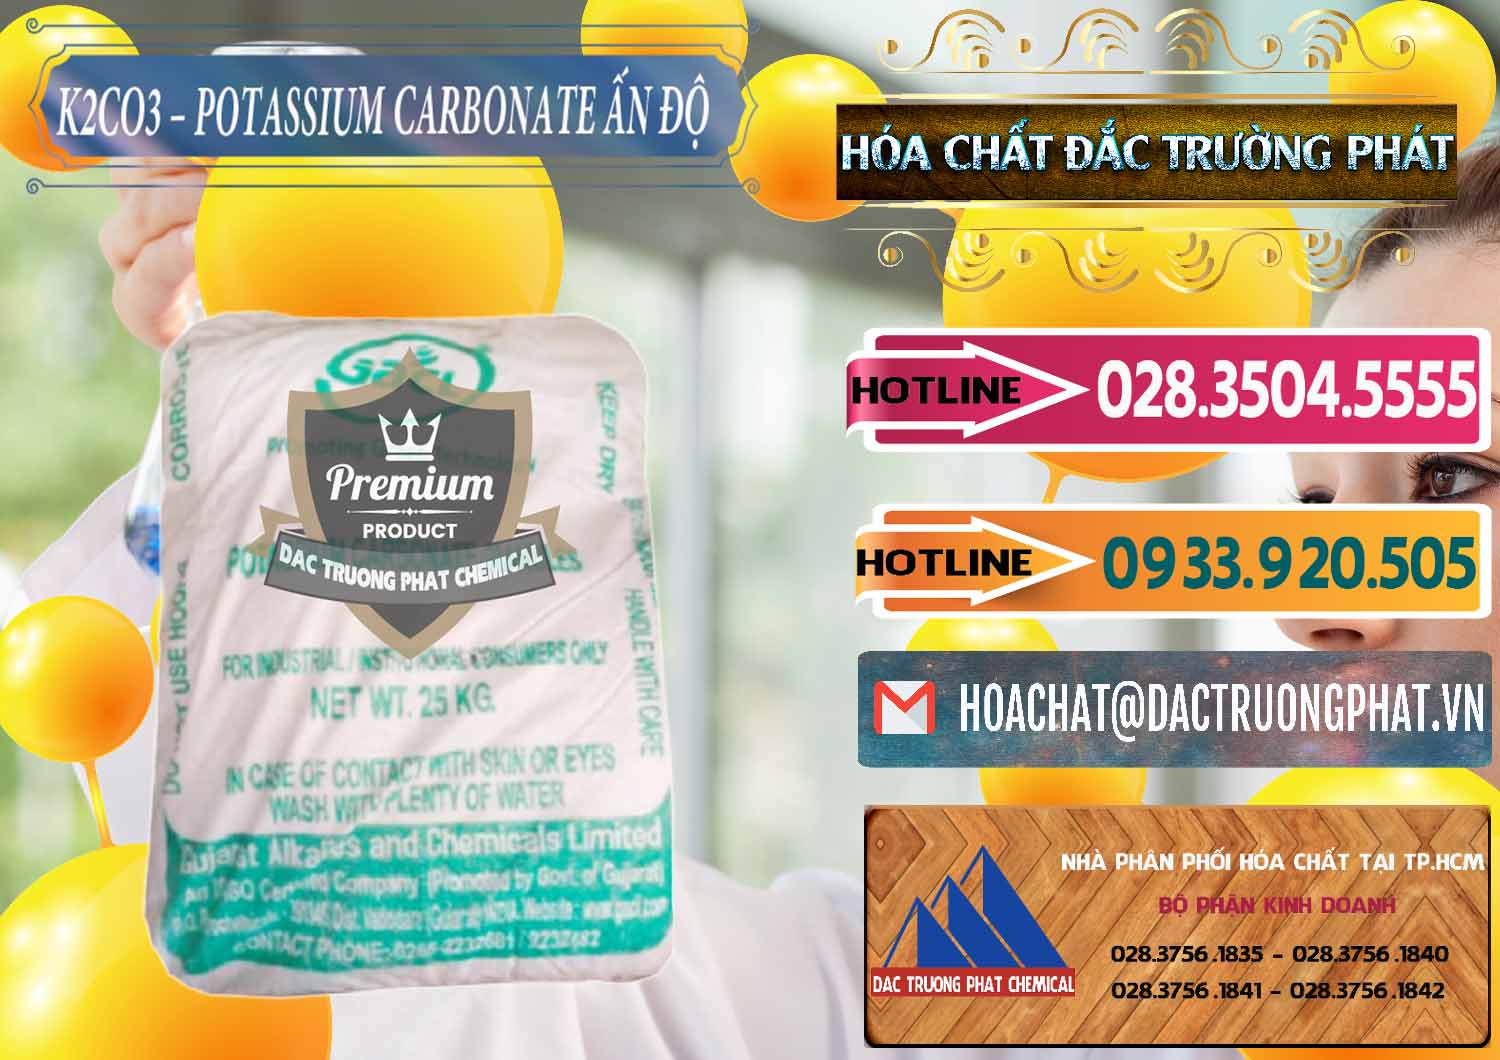 Cty chuyên kinh doanh - bán K2Co3 – Potassium Carbonate GACL Ấn Độ India - 0472 - Chuyên phân phối và cung cấp hóa chất tại TP.HCM - dactruongphat.vn